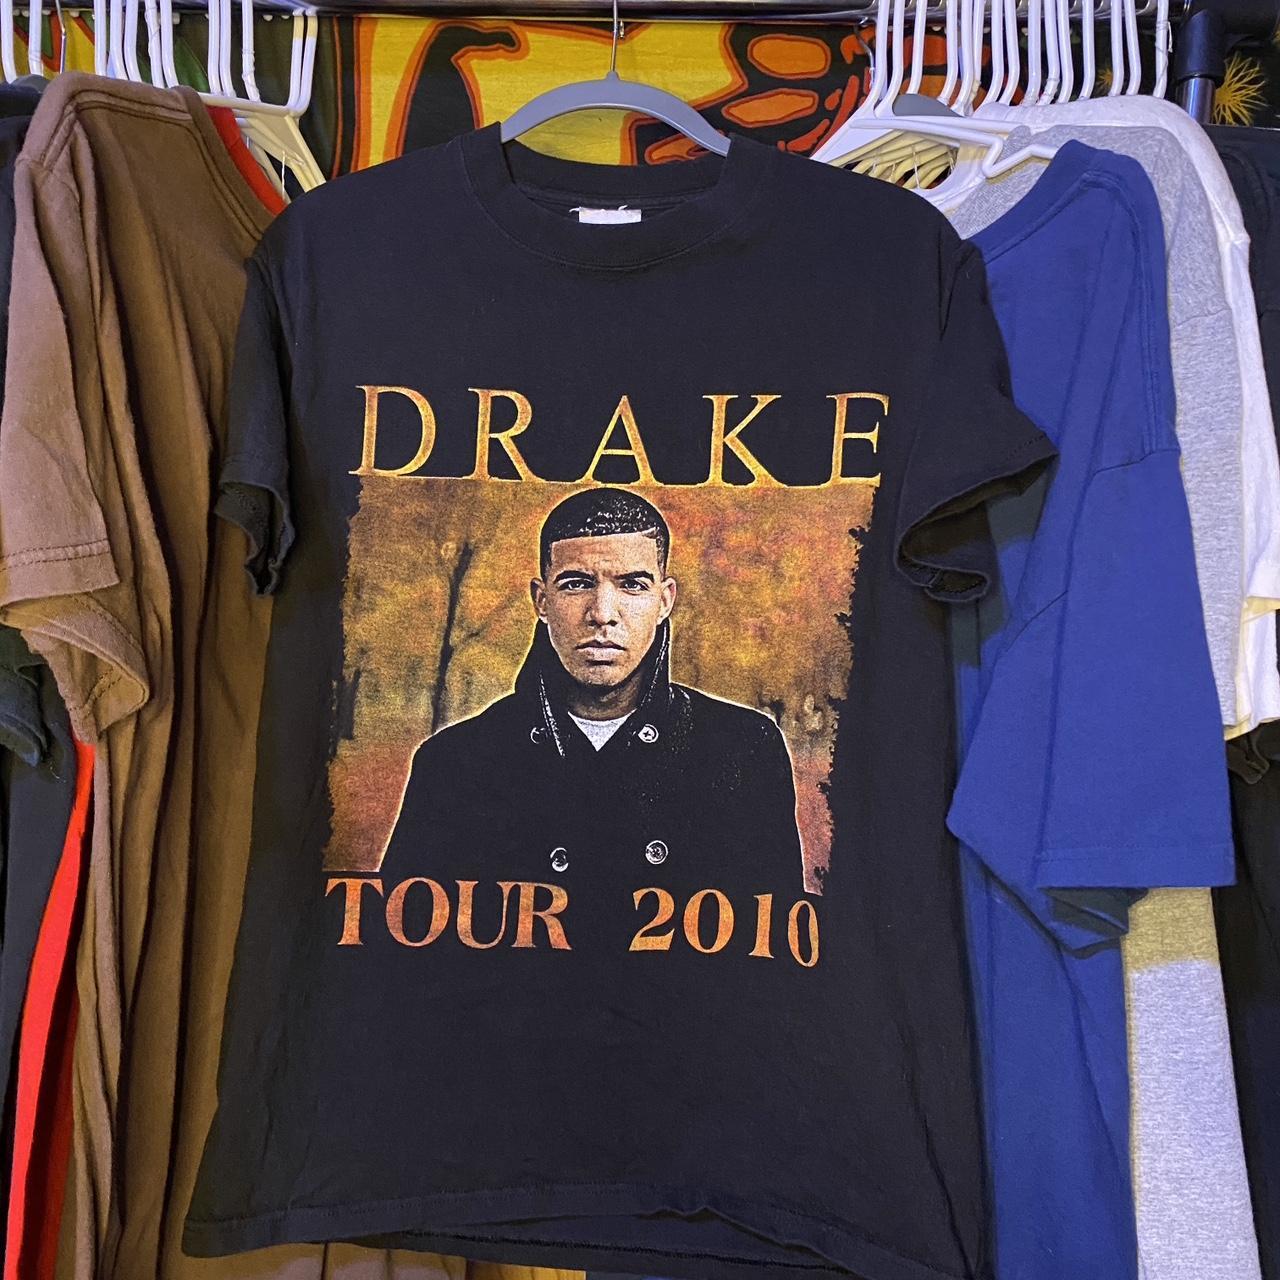 VERY RARE Drake Tour 2010 “Light Dreams And... Depop